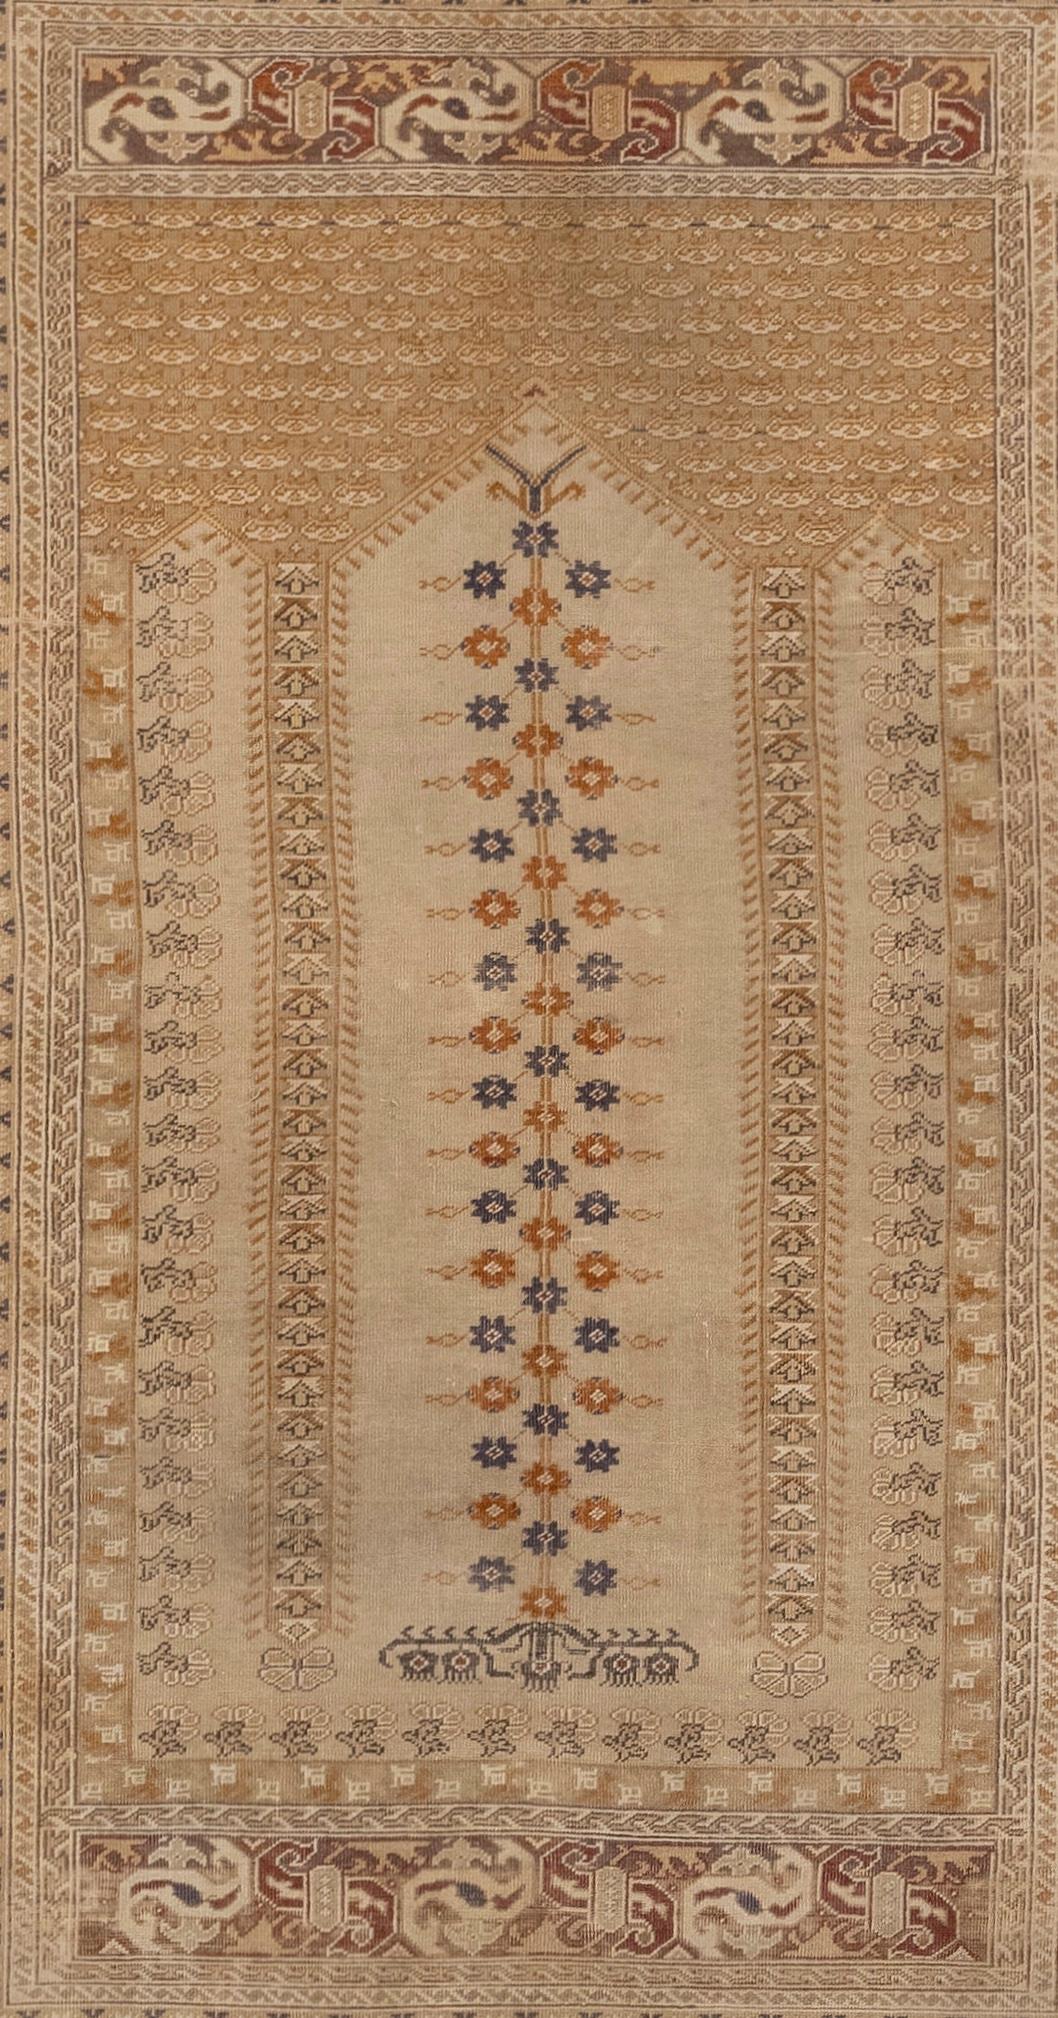 Les tapis anciens Kaiseri sont un type de tapis turcs tissés à la main, originaires de la ville de Kayseri, située dans le centre de la Turquie. Ces tapis ont été fabriqués au 19e et au début du 20e siècle et sont très prisés par les collectionneurs